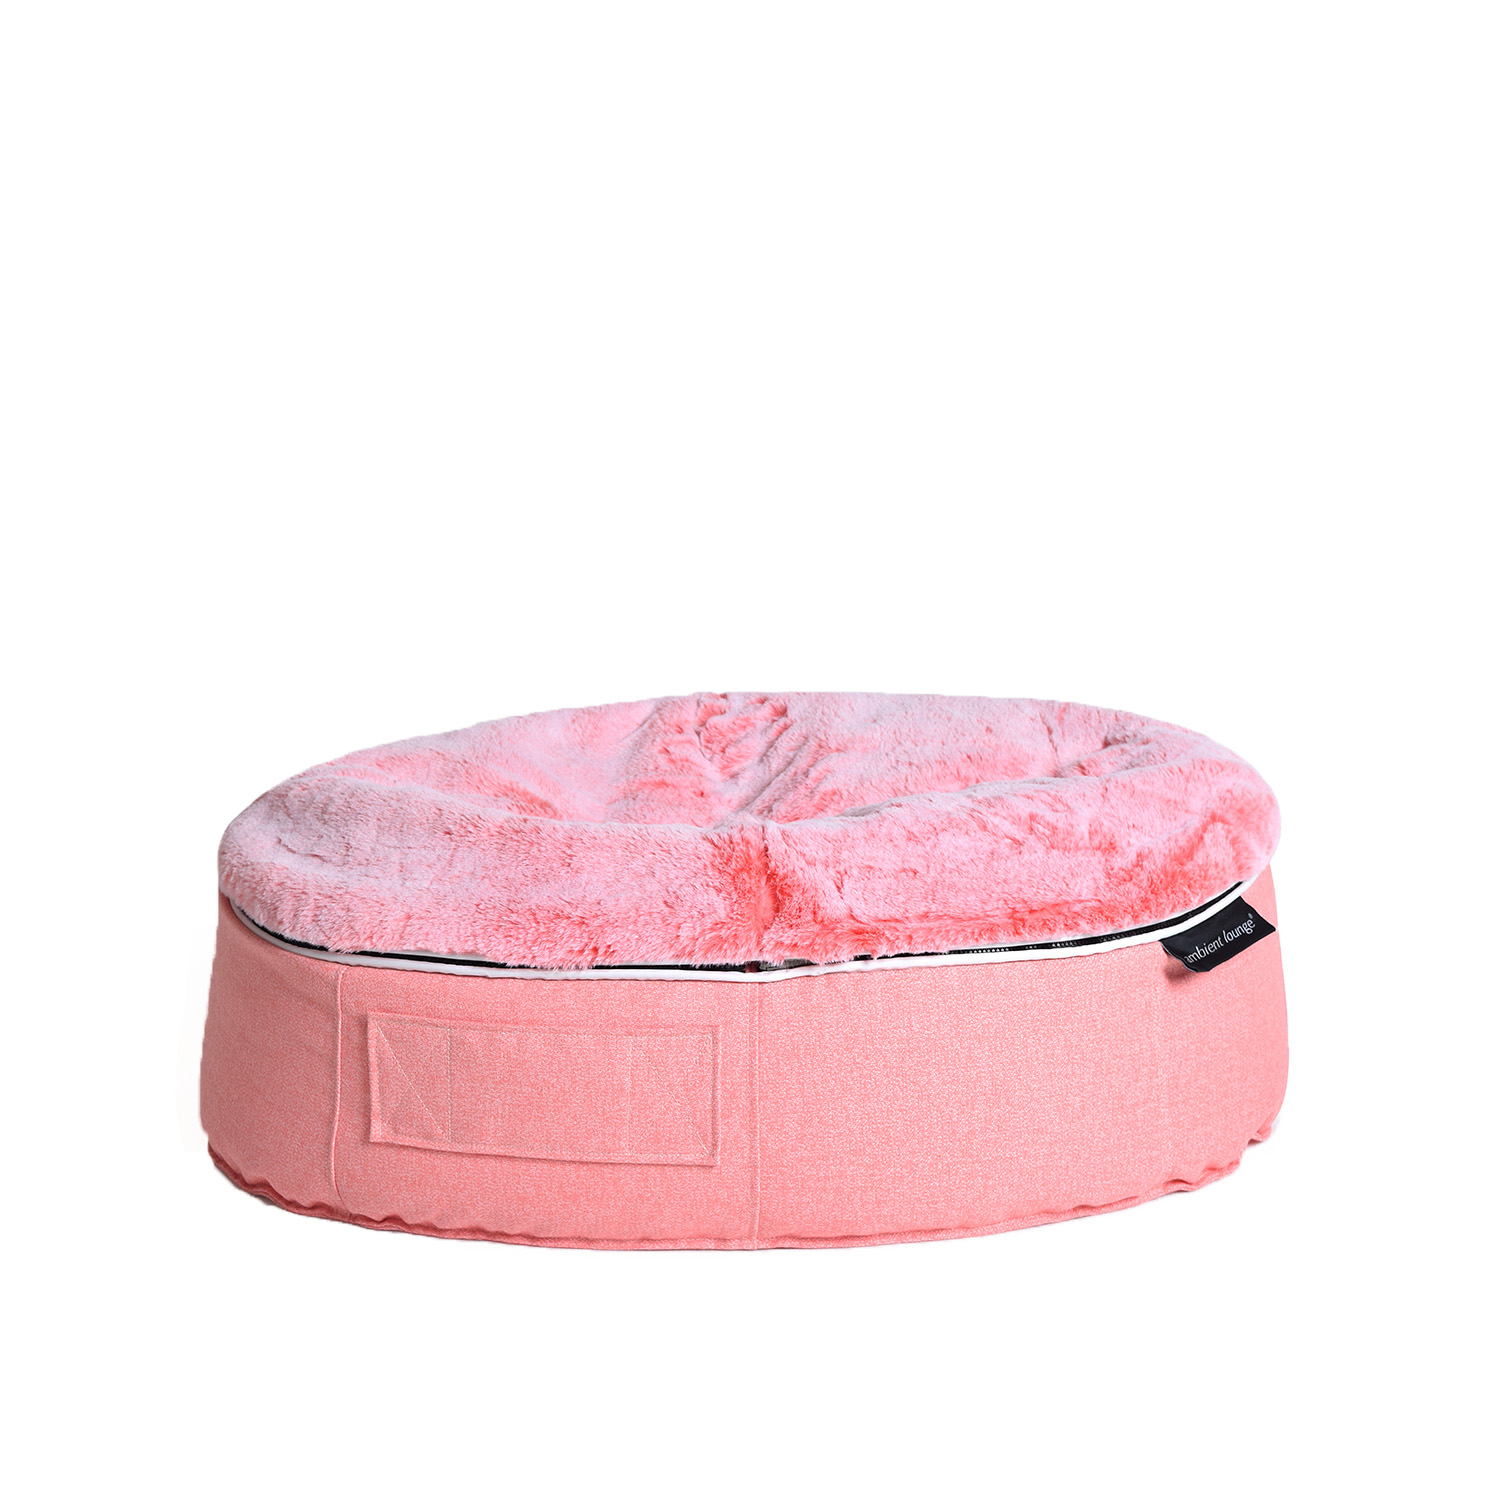 Pet Beds | Dog Beds - Designer Dog Bean Bags (Ballerina Pink) | Medium Size